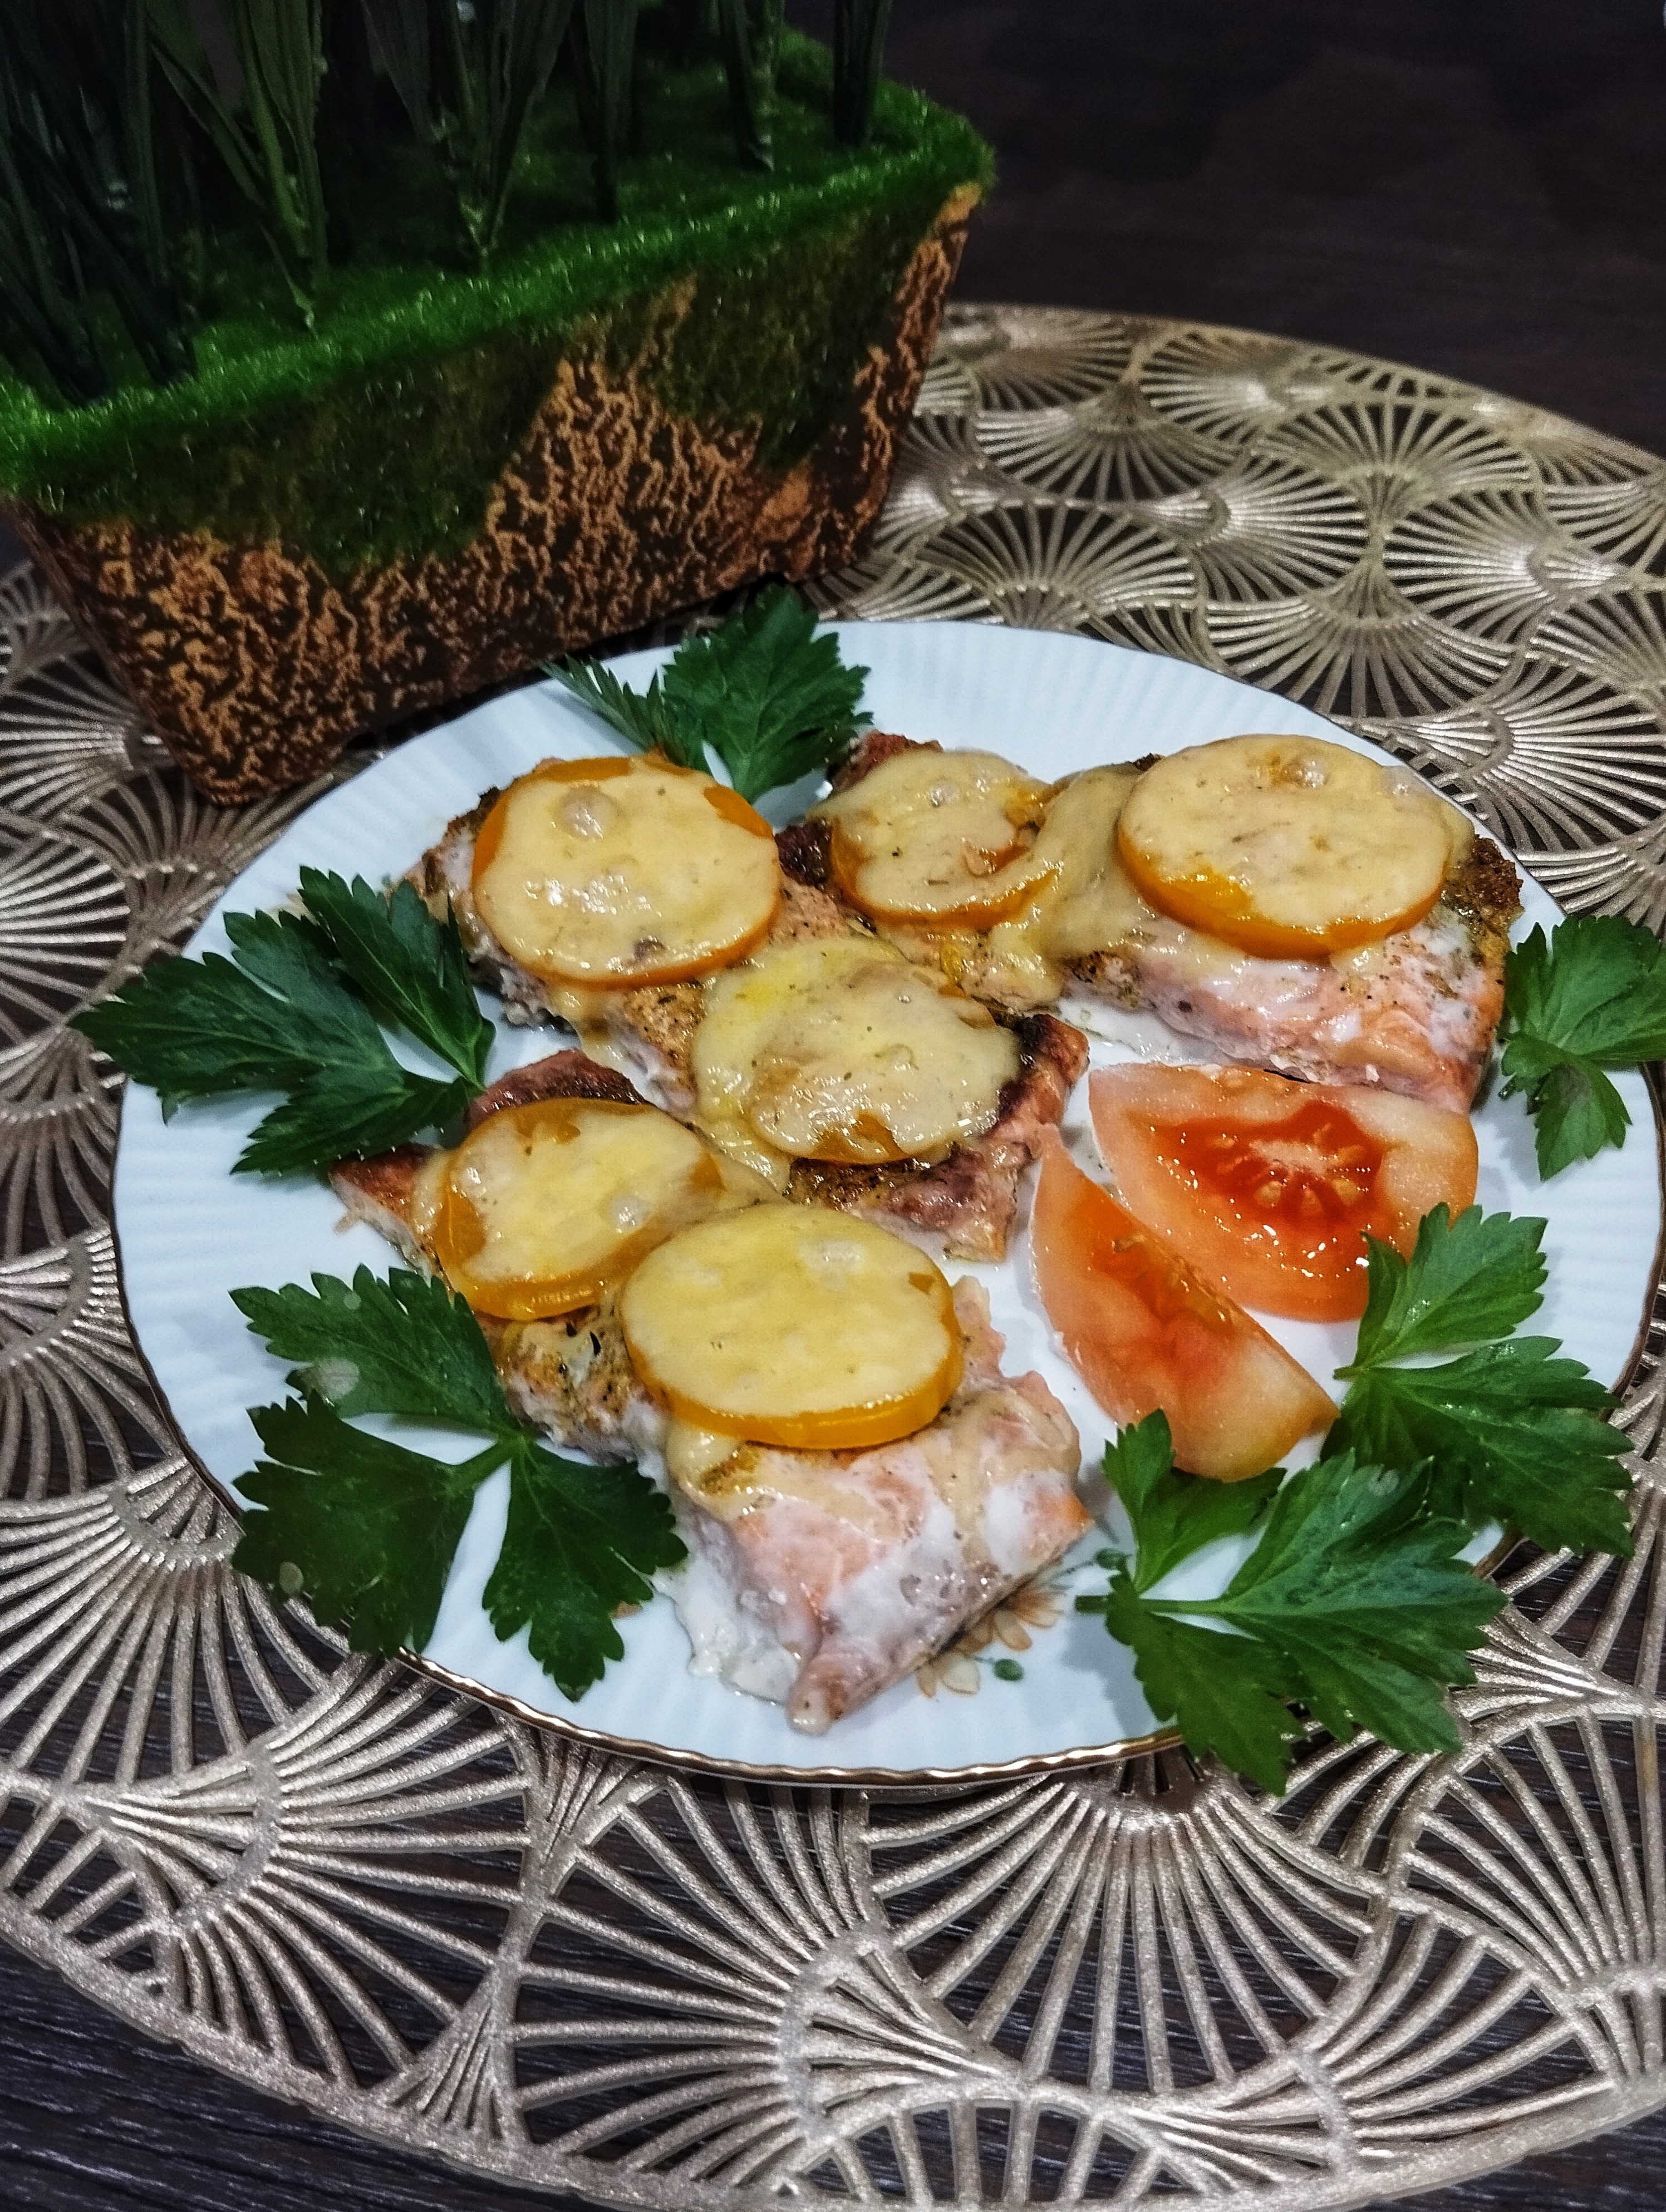 Горбуша в духовке с помидорами и сыром, пошаговый рецепт с фото на ккал